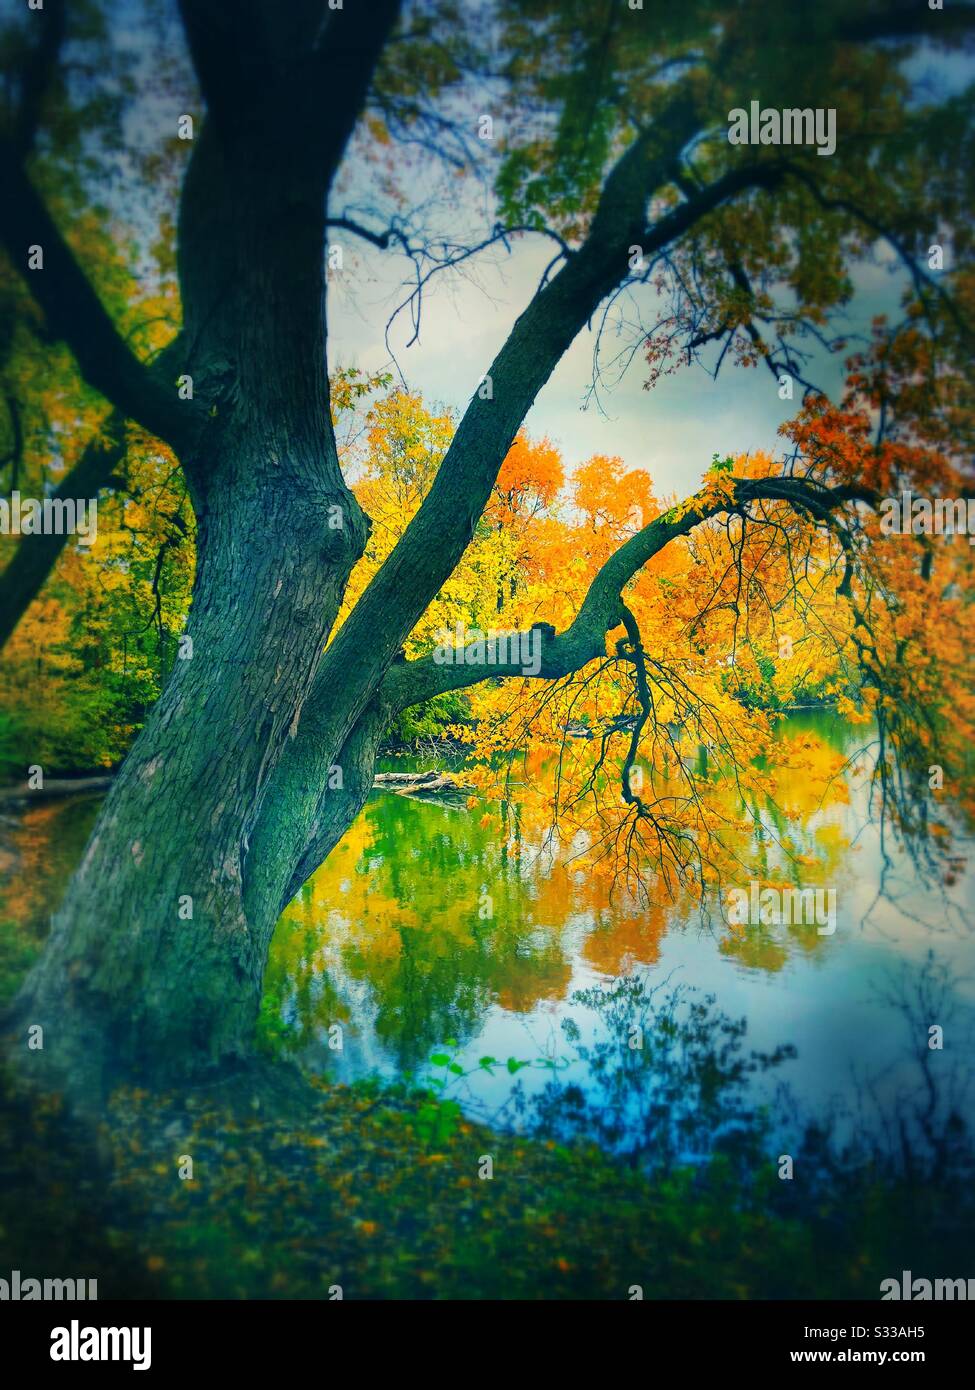 Herbstbäume bilden eine spektakuläre Herbstszene mit Fokus auf einen großen Baum mit verwinkelten Ästen und bunten Blättern am Seeufer und einem stürmischen Himmel. Stockfoto